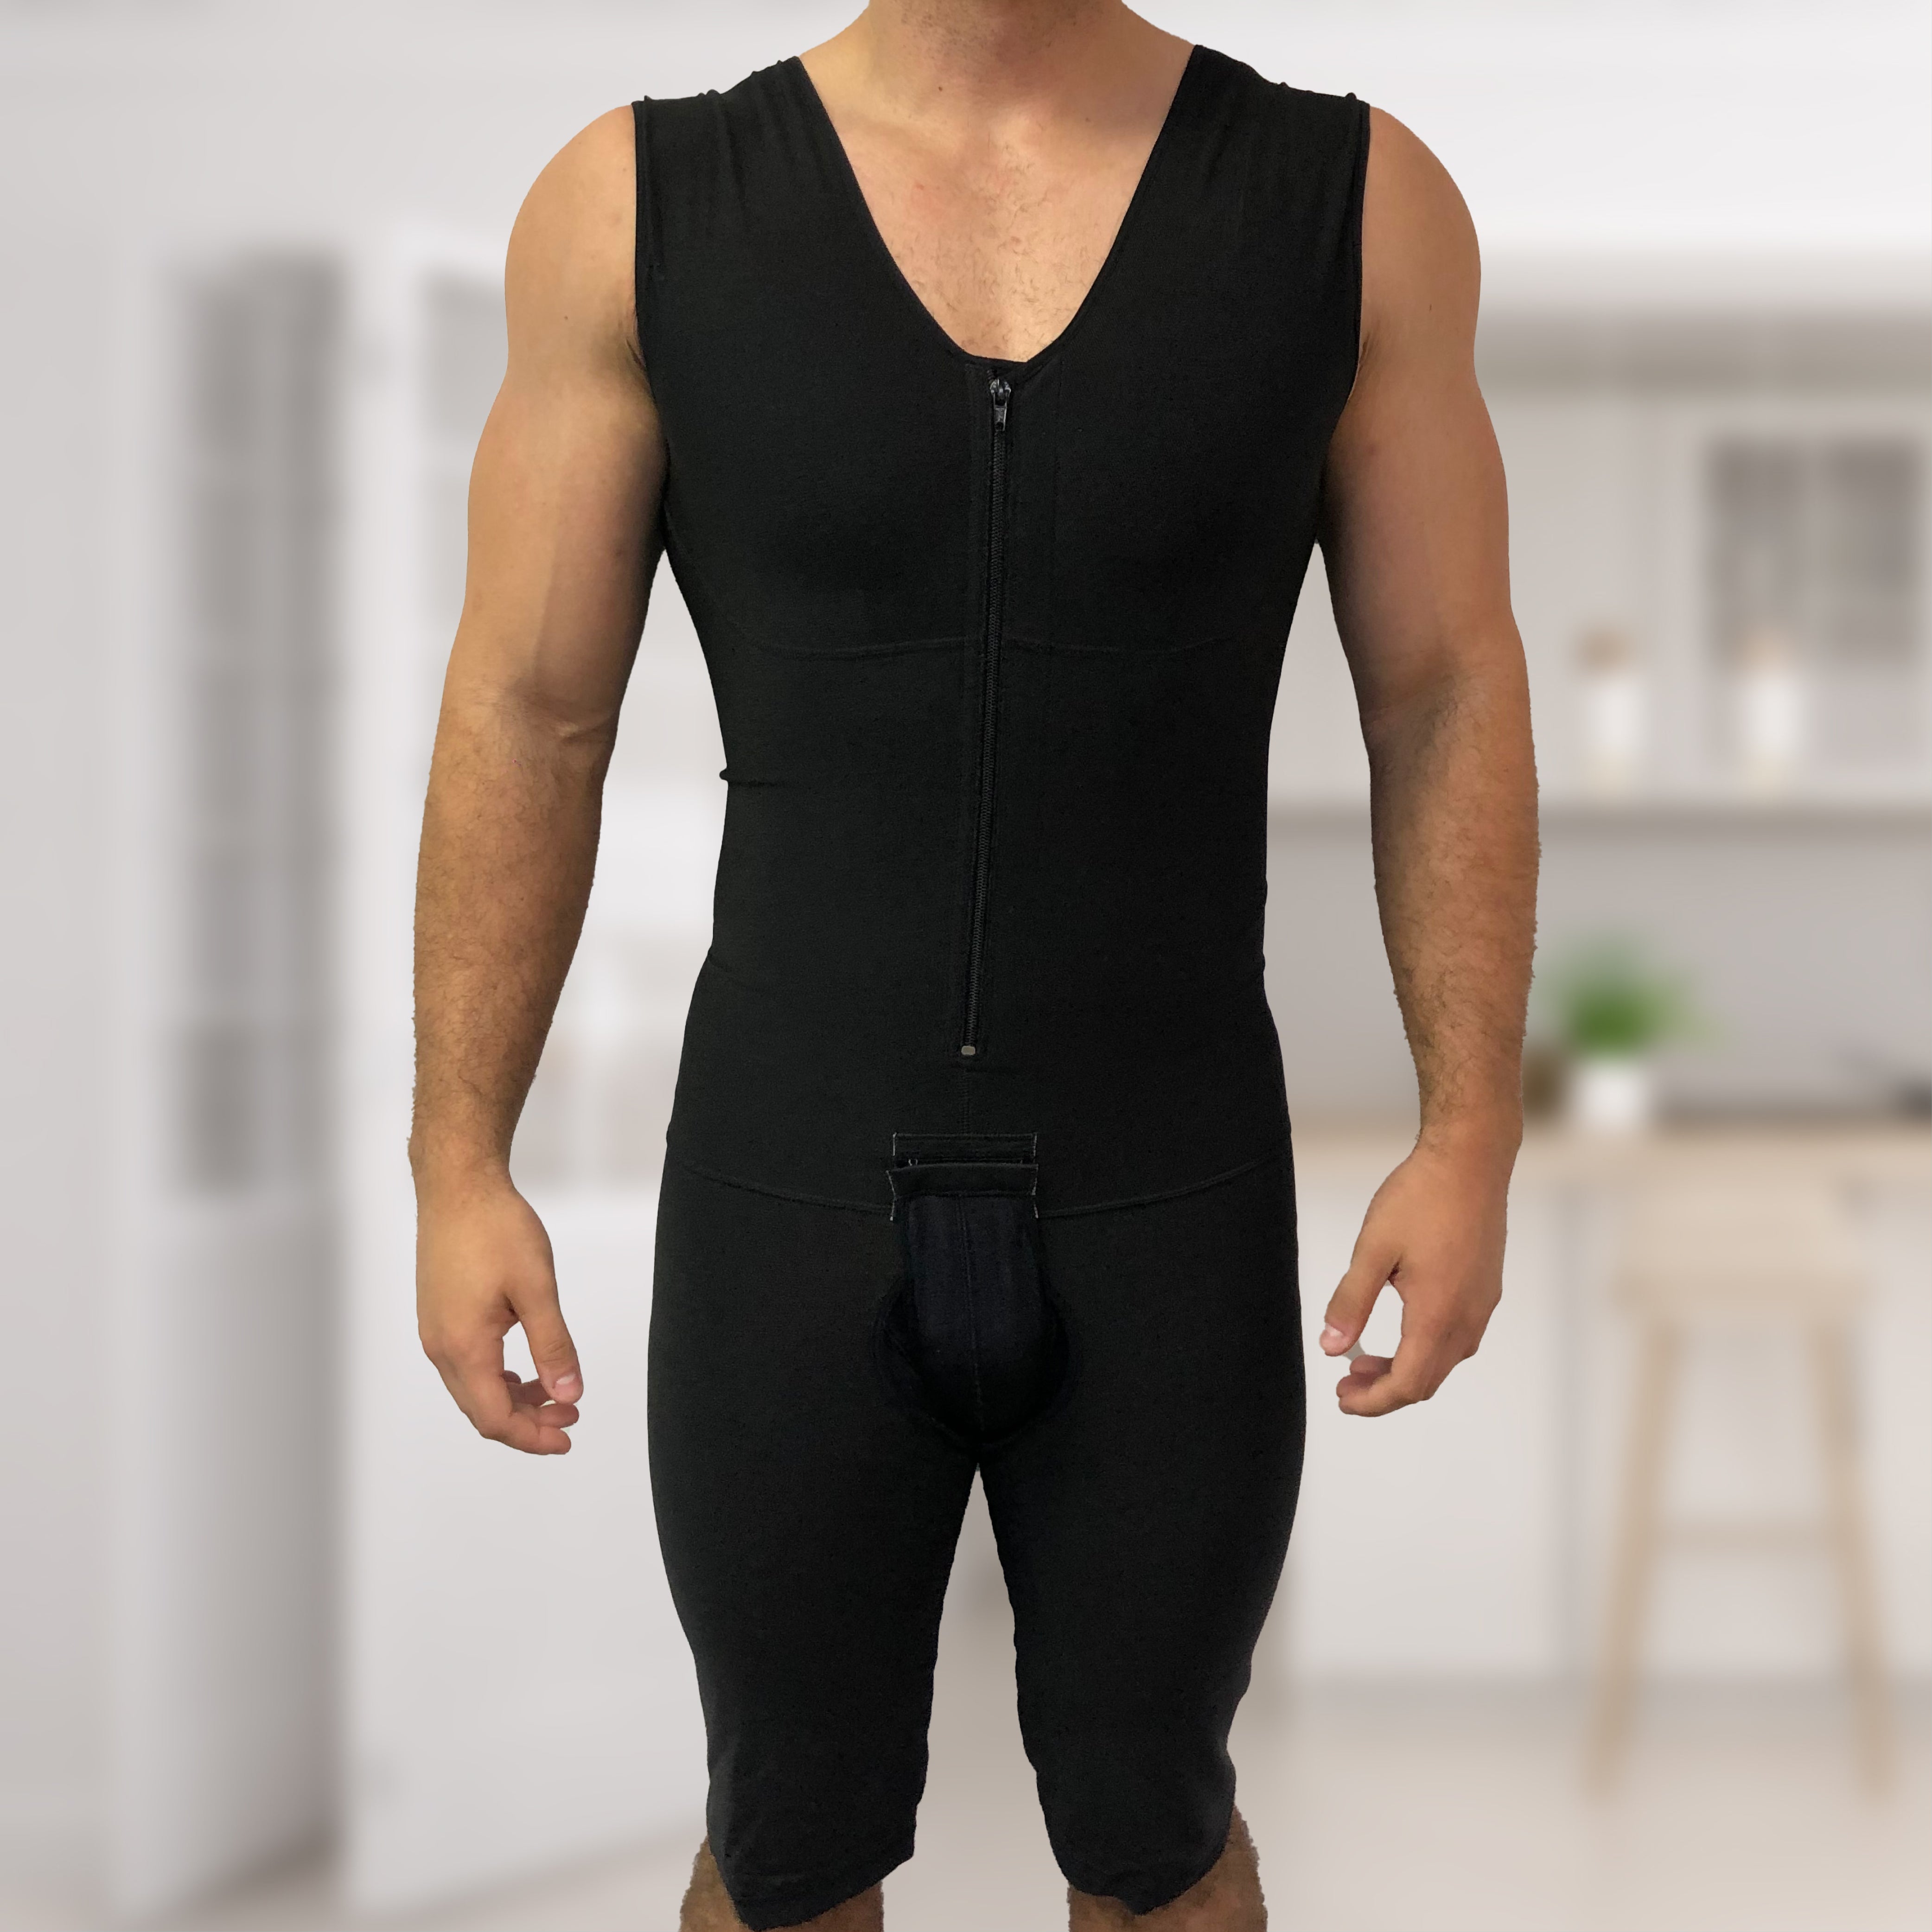 https://drshape.net/cdn/shop/products/Website-image-Men_s-Body-Garment.jpg?v=1677825346